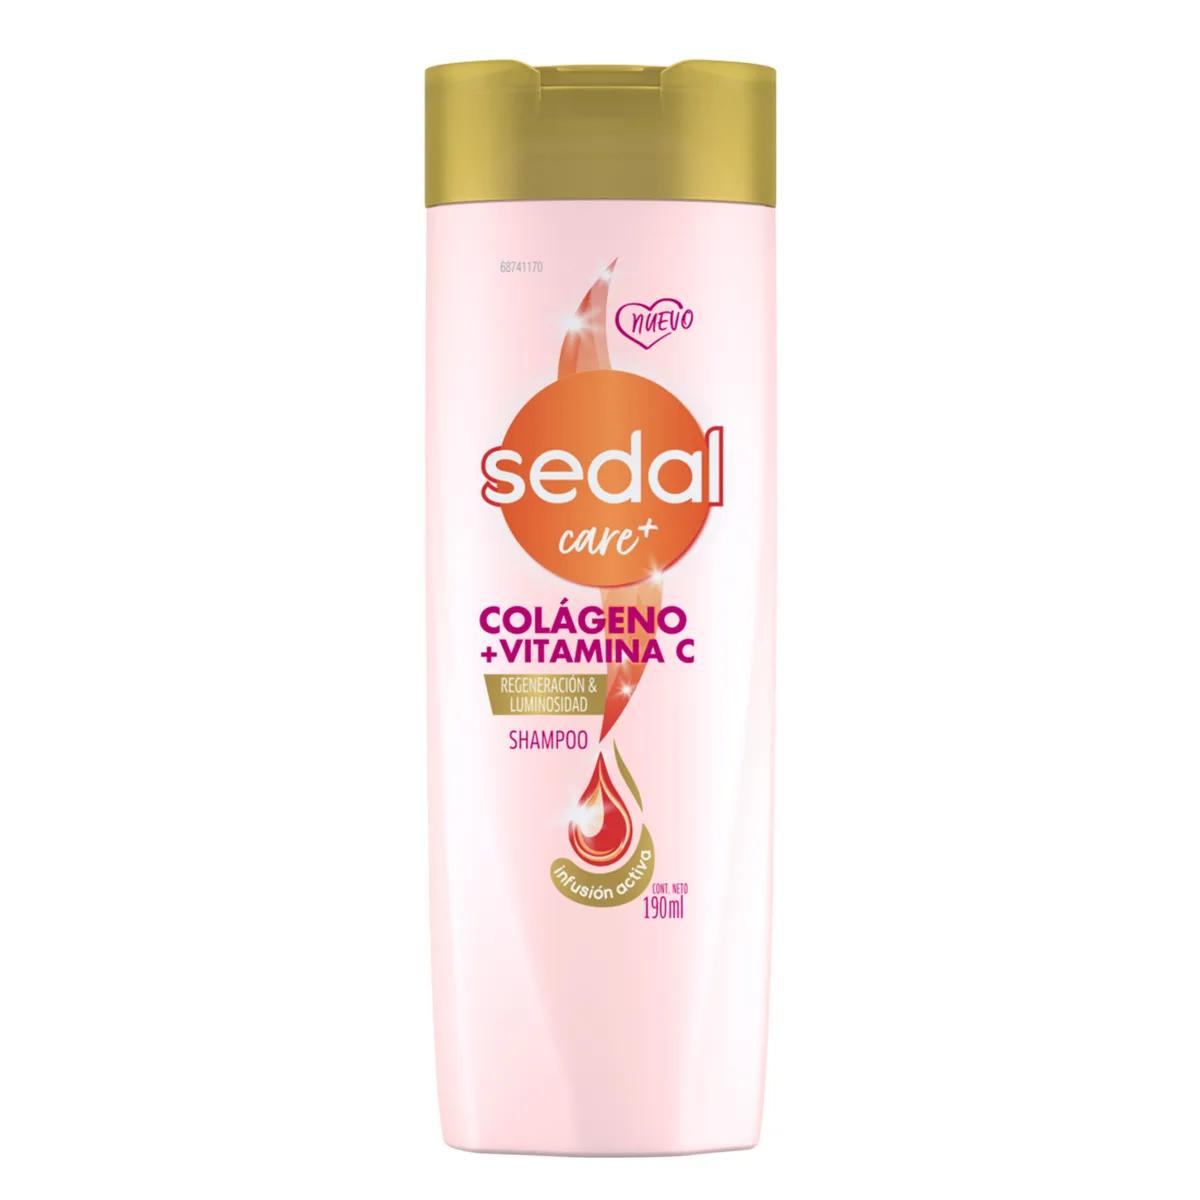 Shampoo Colageno y Vitamina C Sedal - 190ml